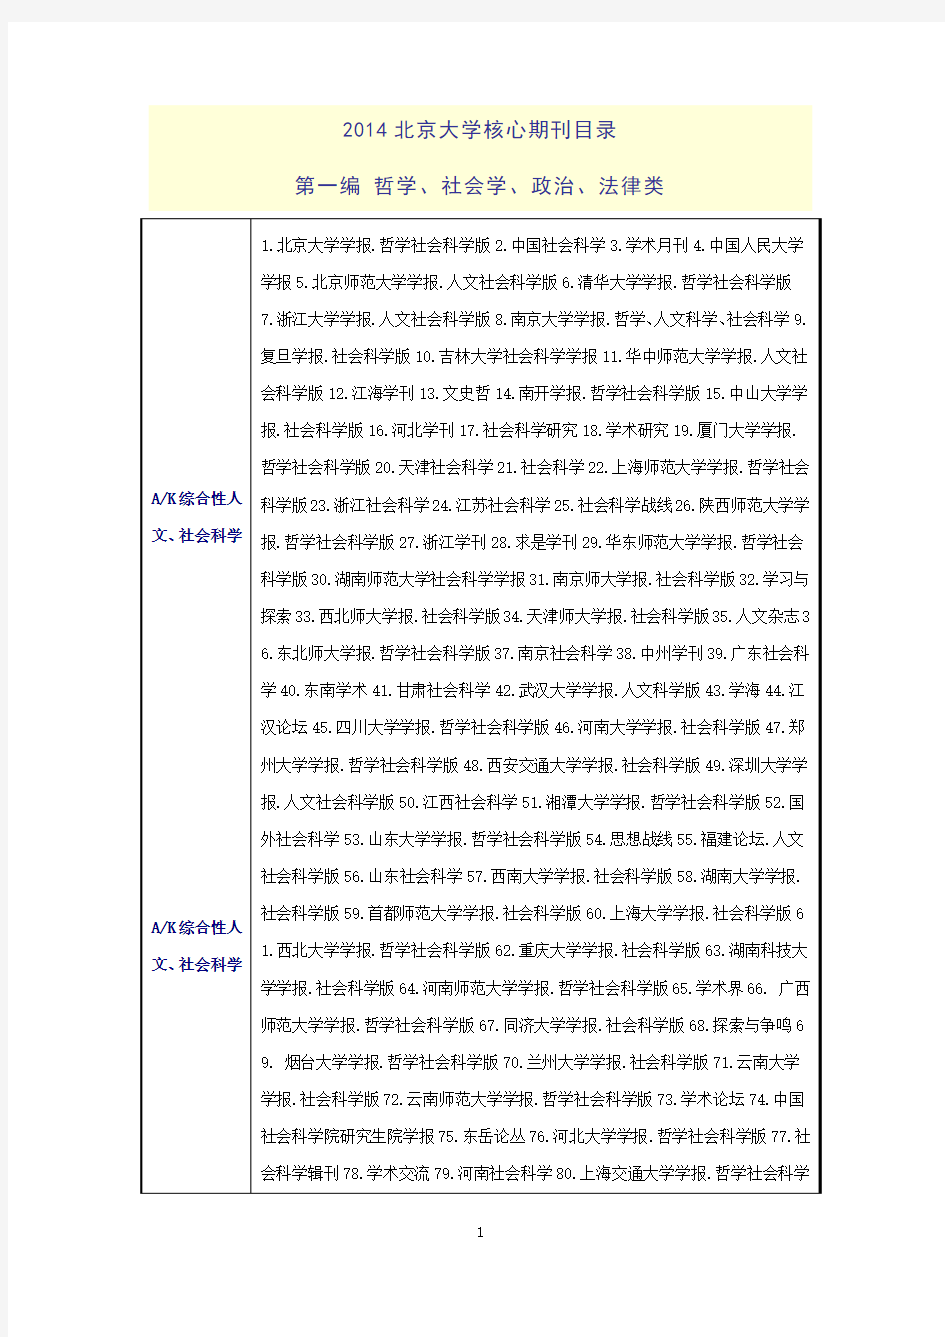 2014年版《中文核心期刊要目总览》